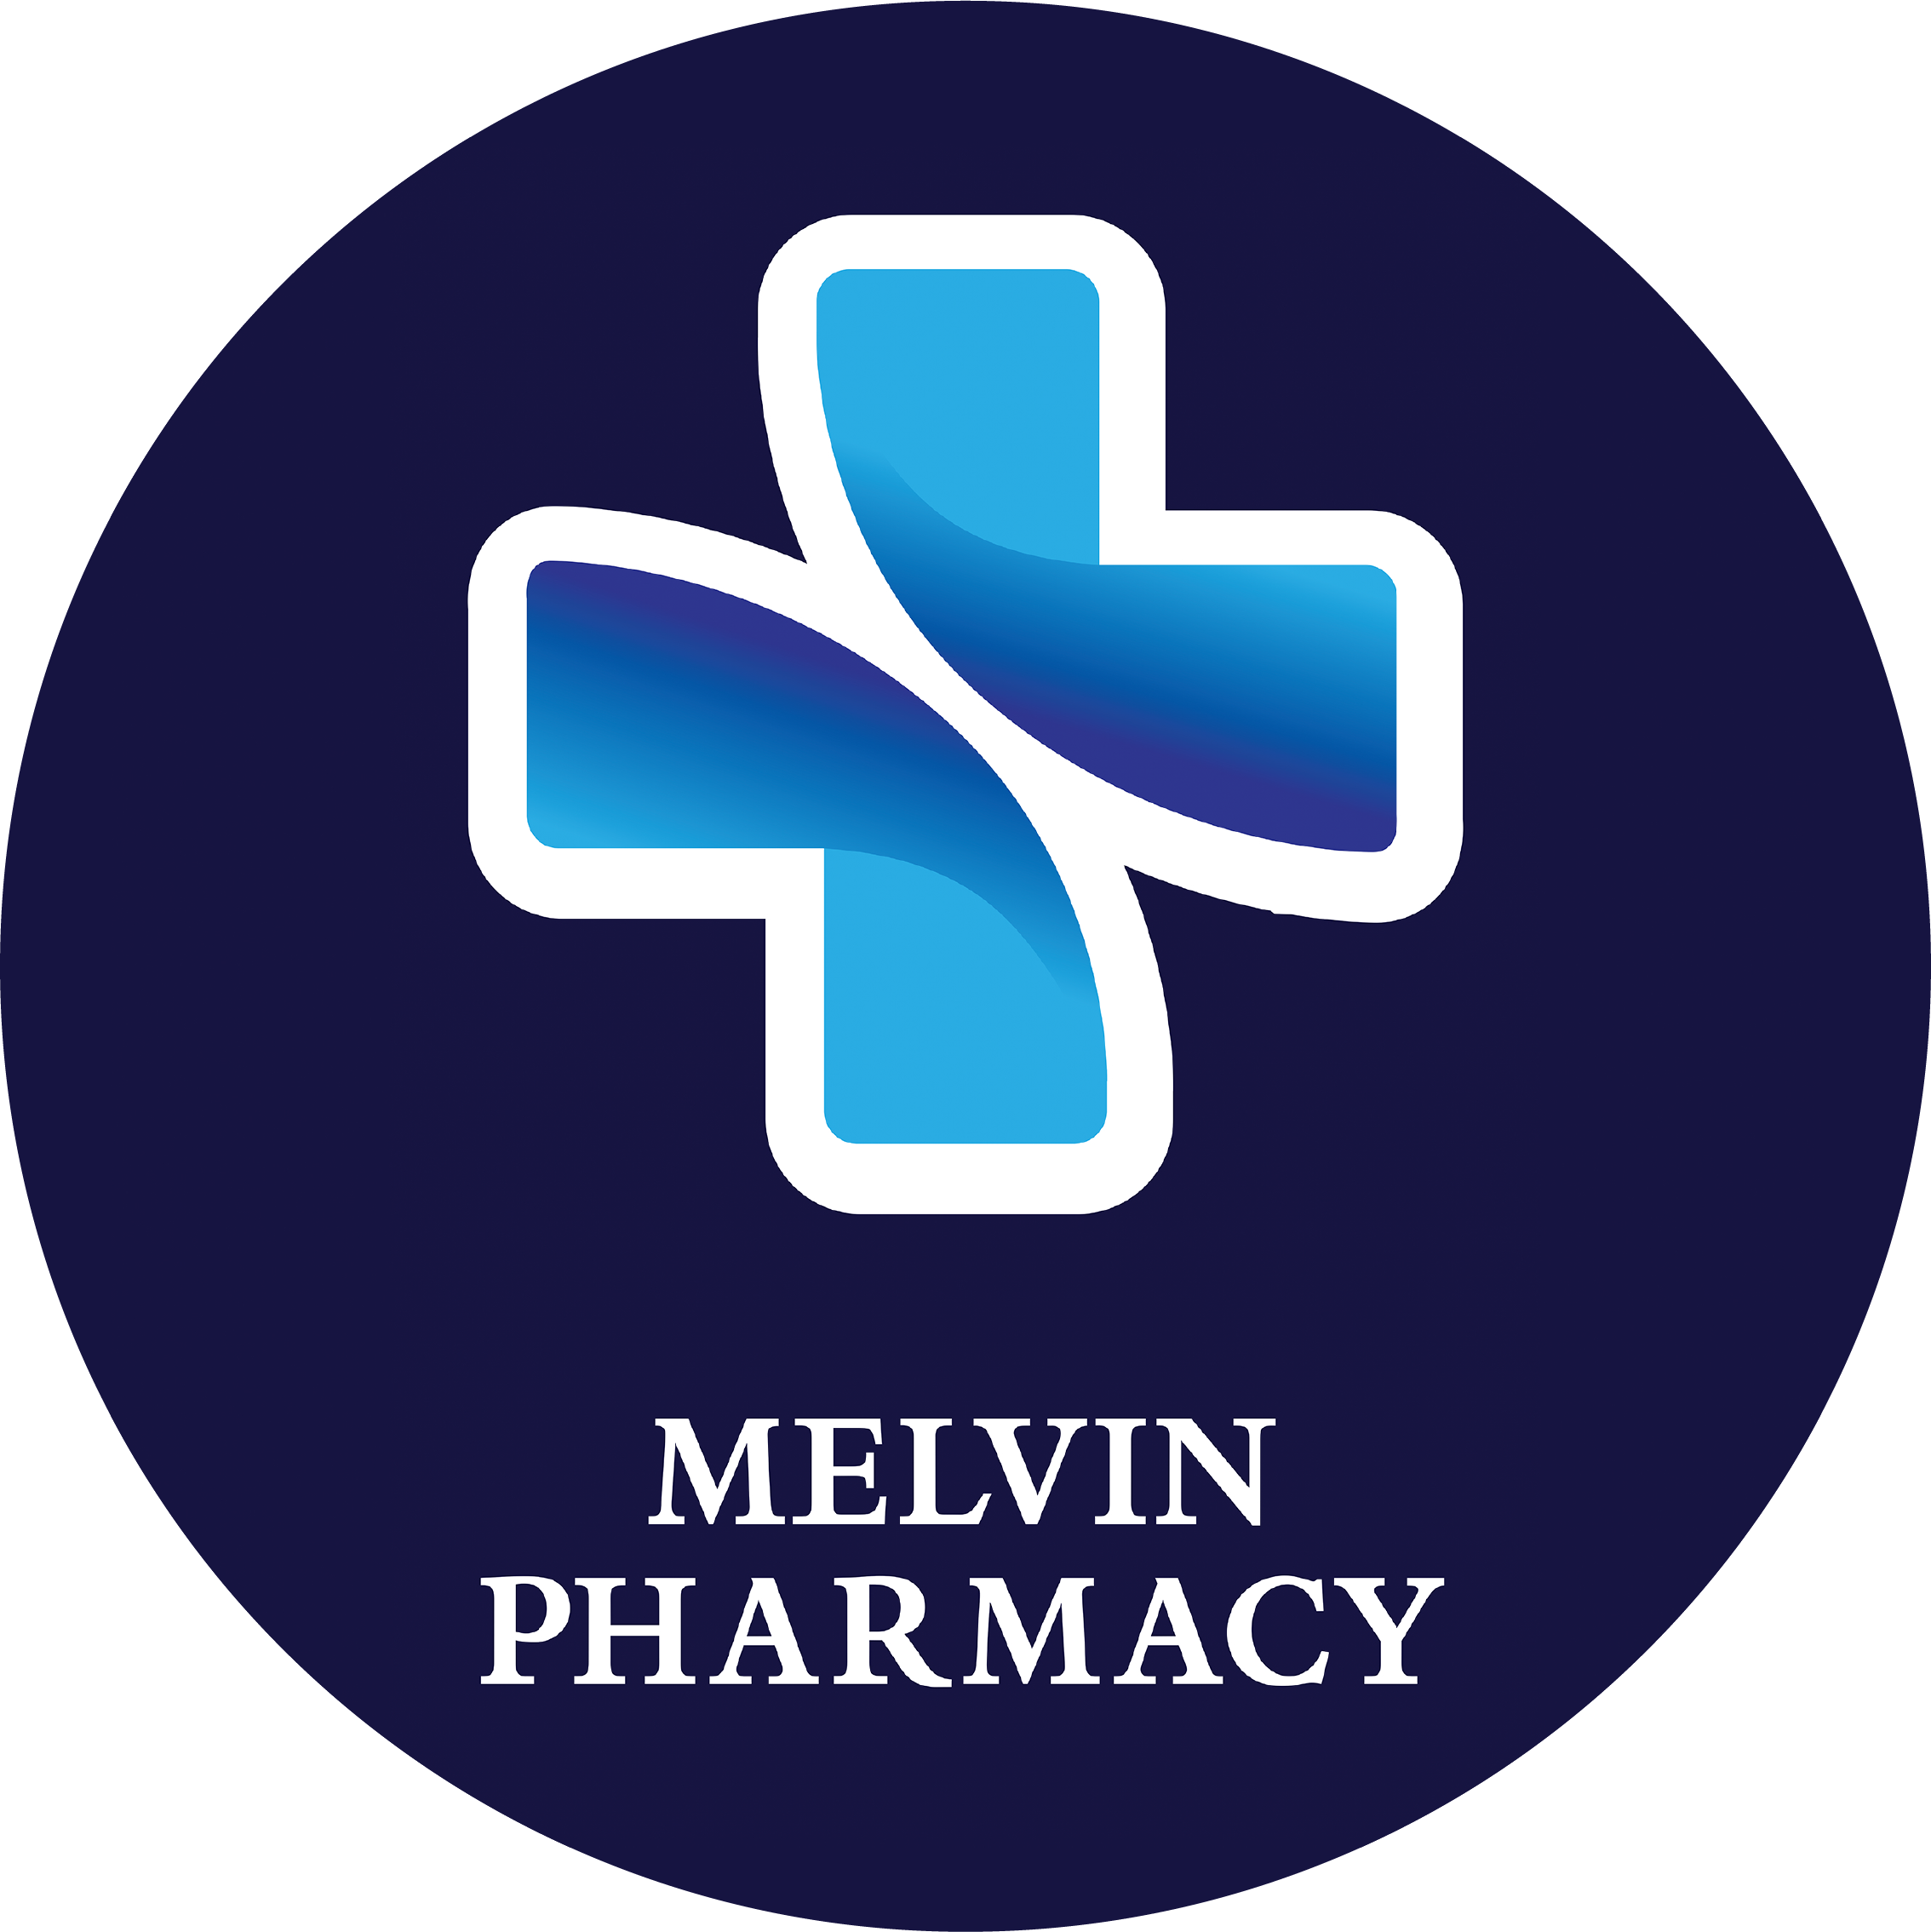 Melvin Pharmacy Ltd